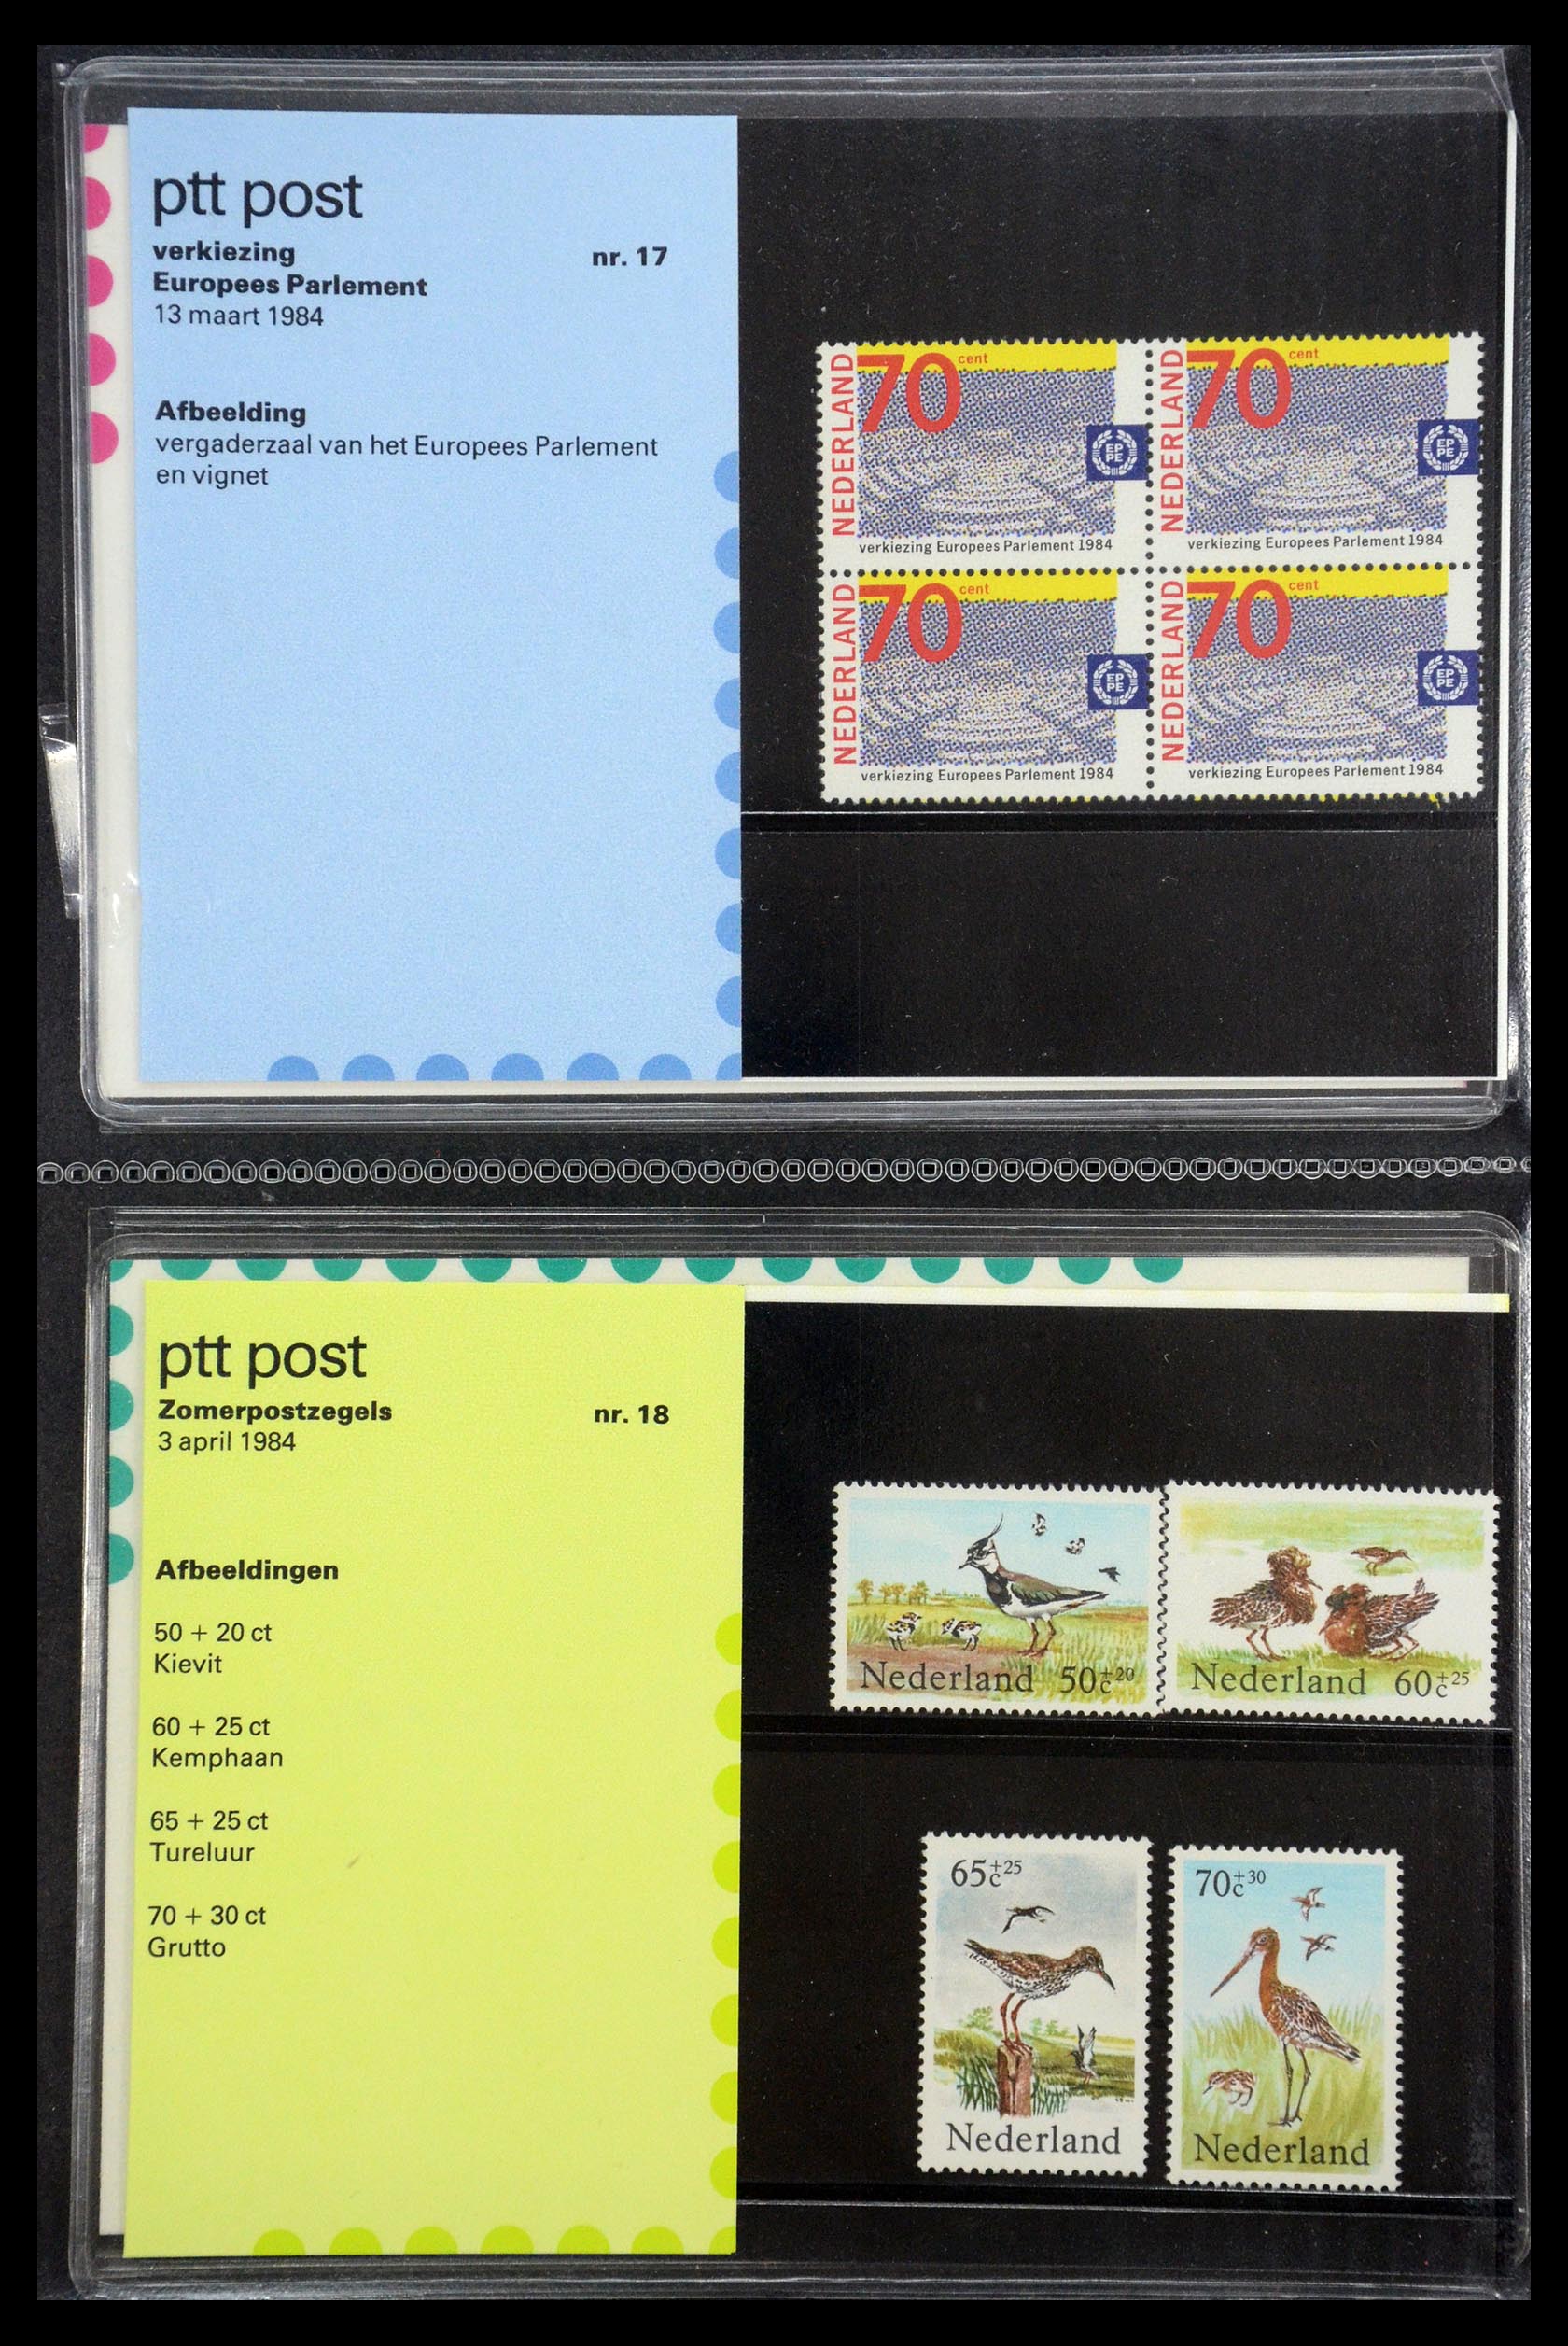 35187 009 - Stamp Collection 35187 Netherlands PTT presentation packs 1982-2019!